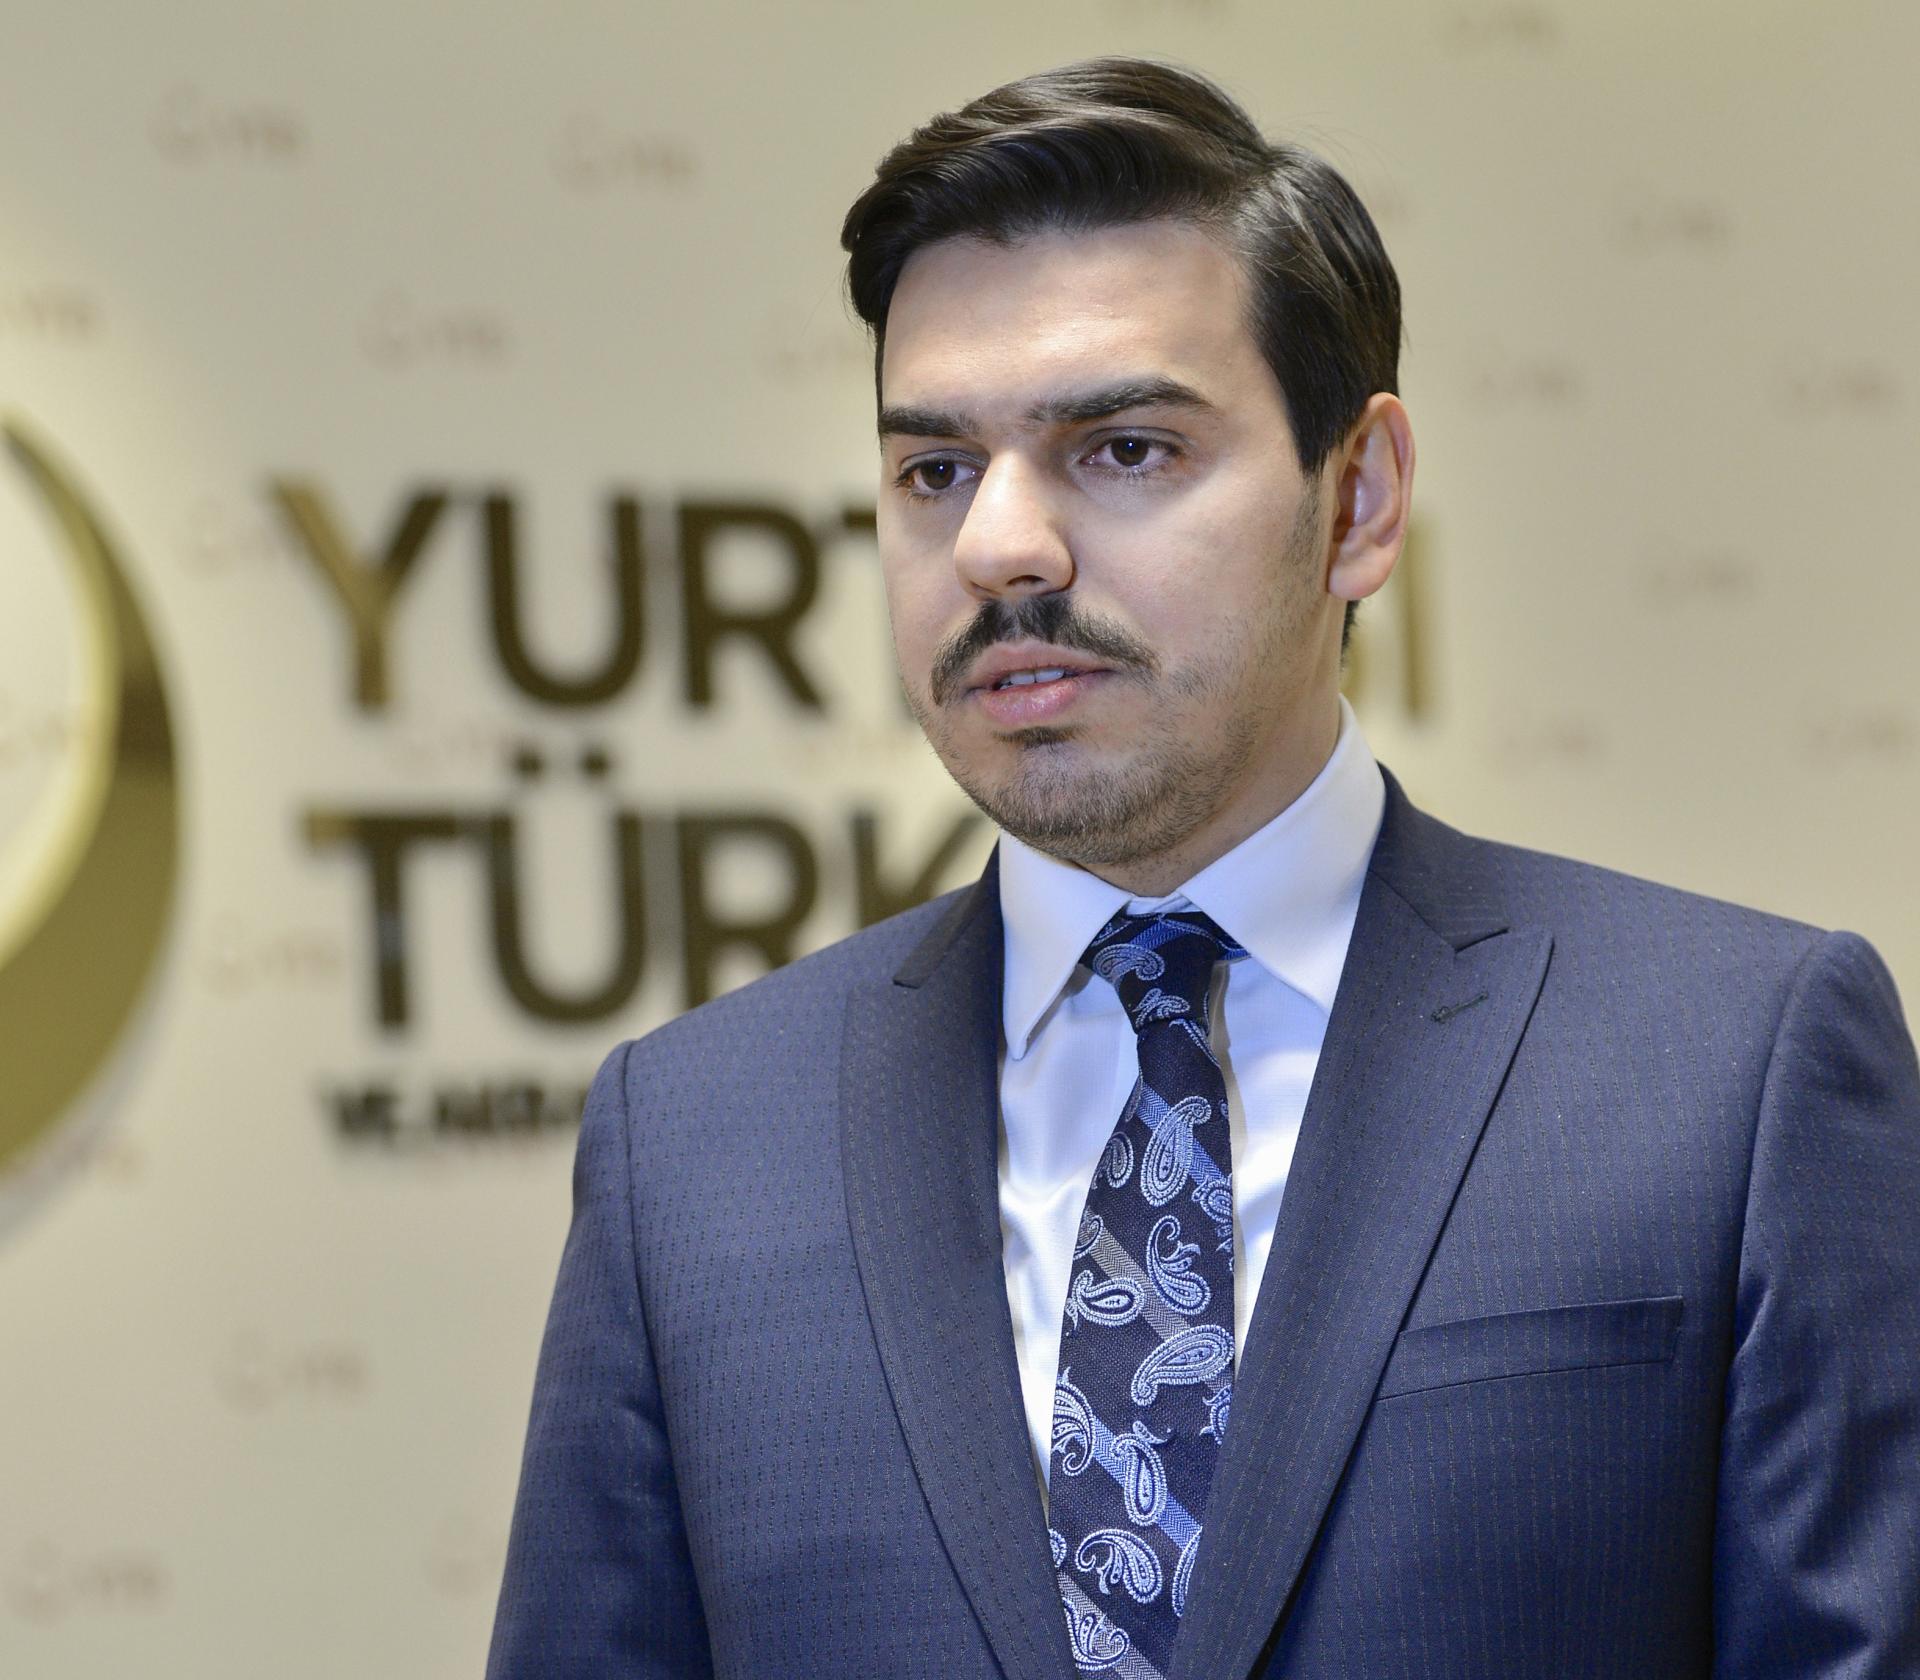 Kreu i YTB-së i telefonoi biznesmenit turk, viktimë e dhunës policore gjermane